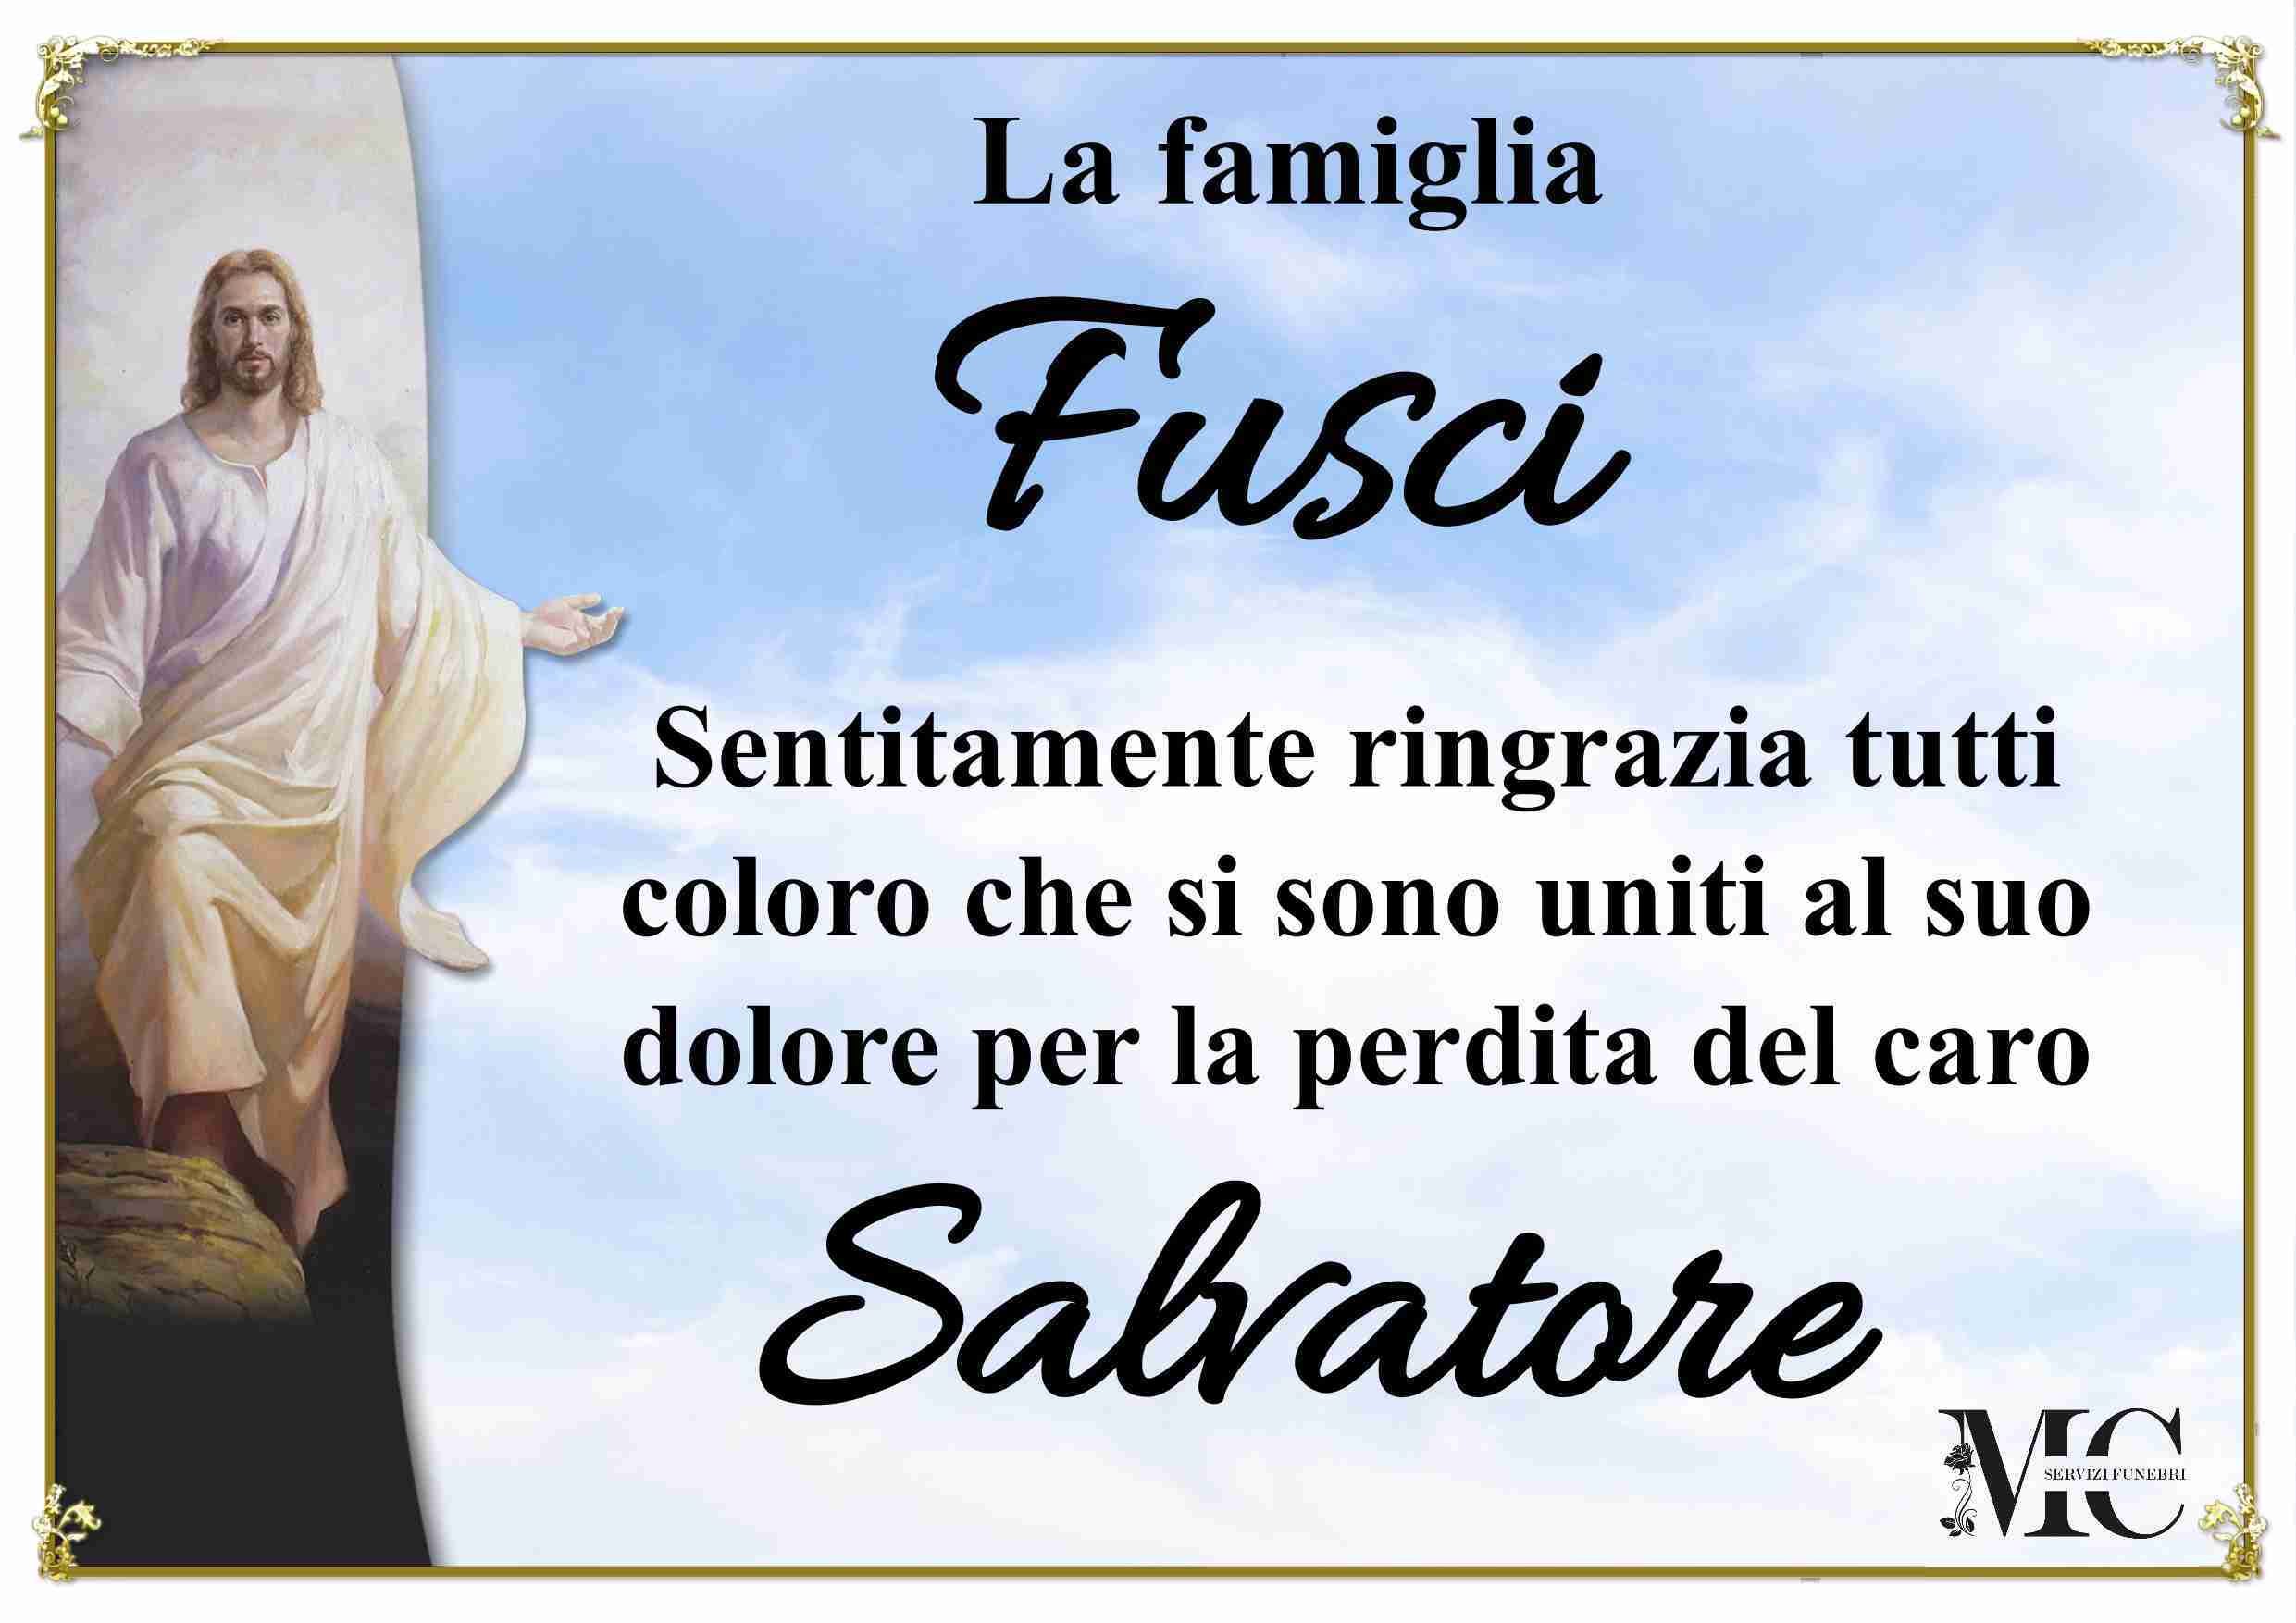 Salvatore Fusci